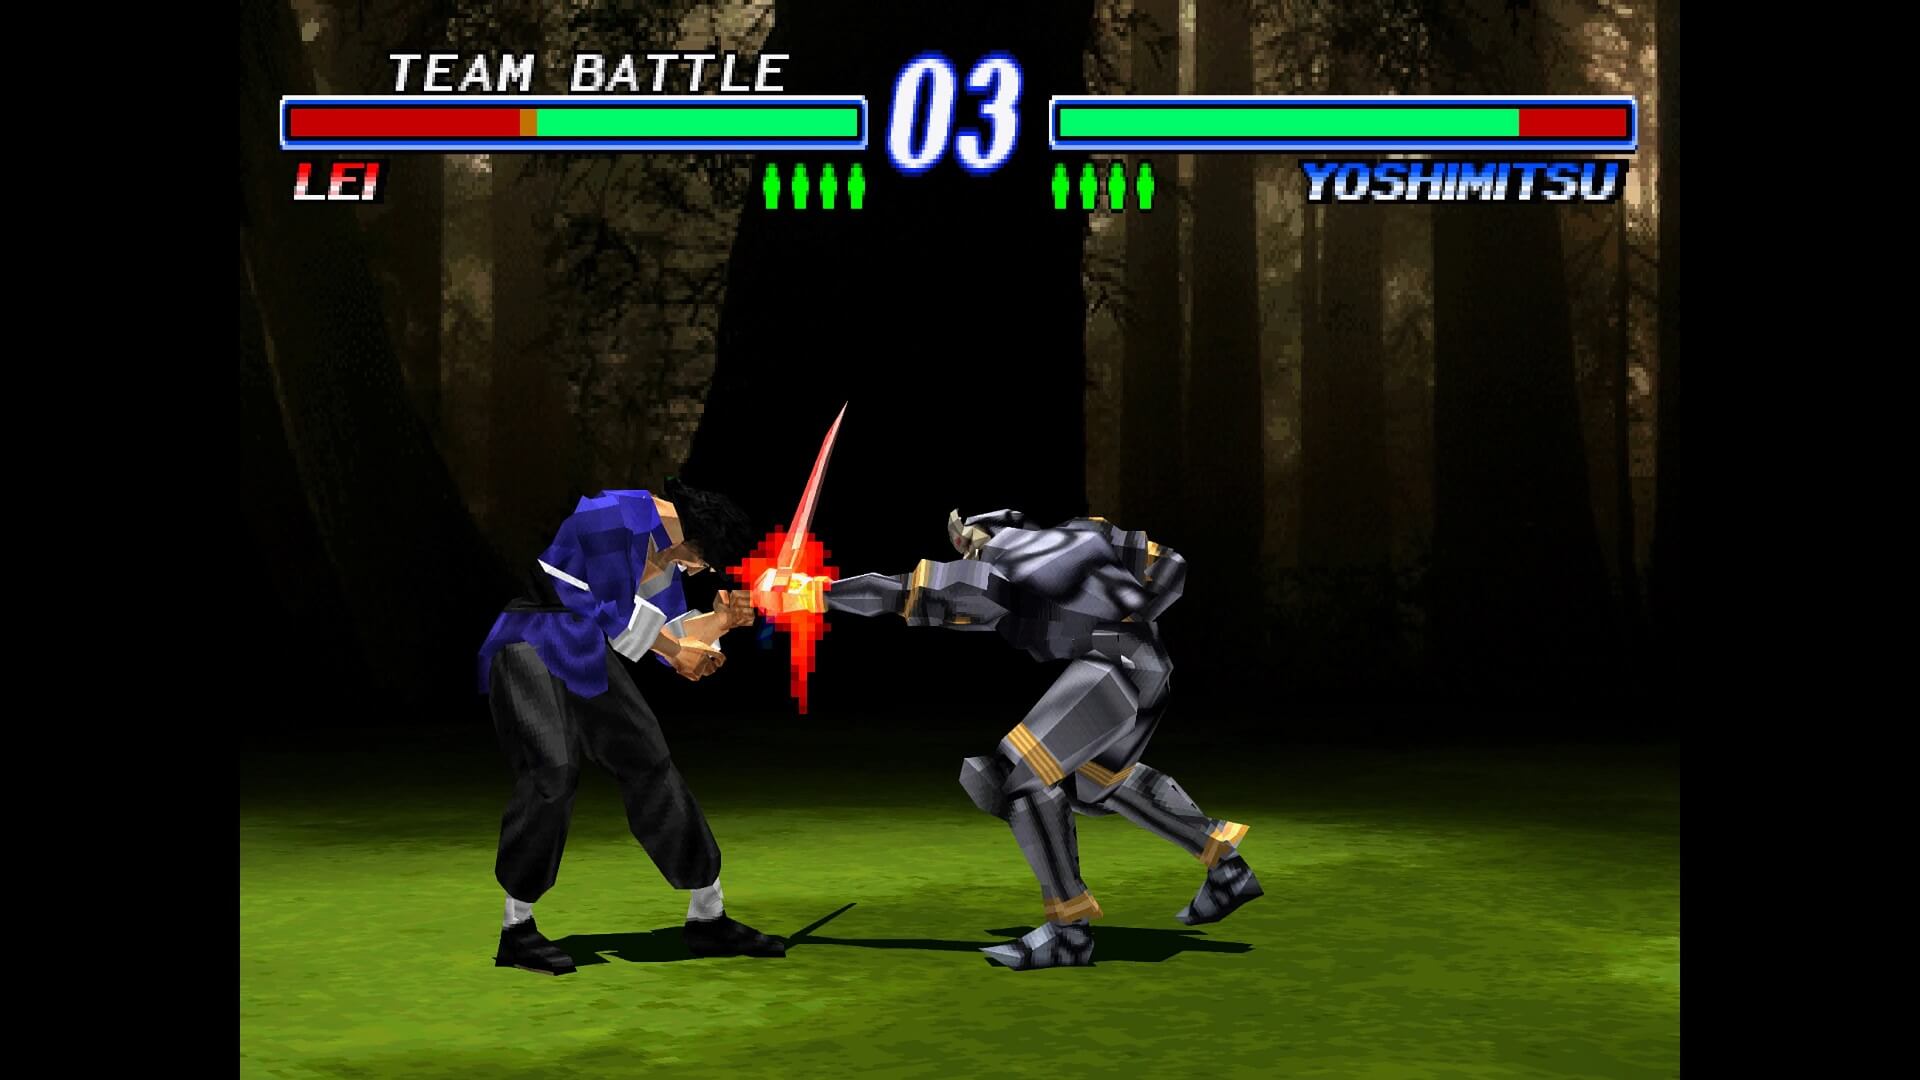 Lei facing Yoshimitsu in Tekken 2